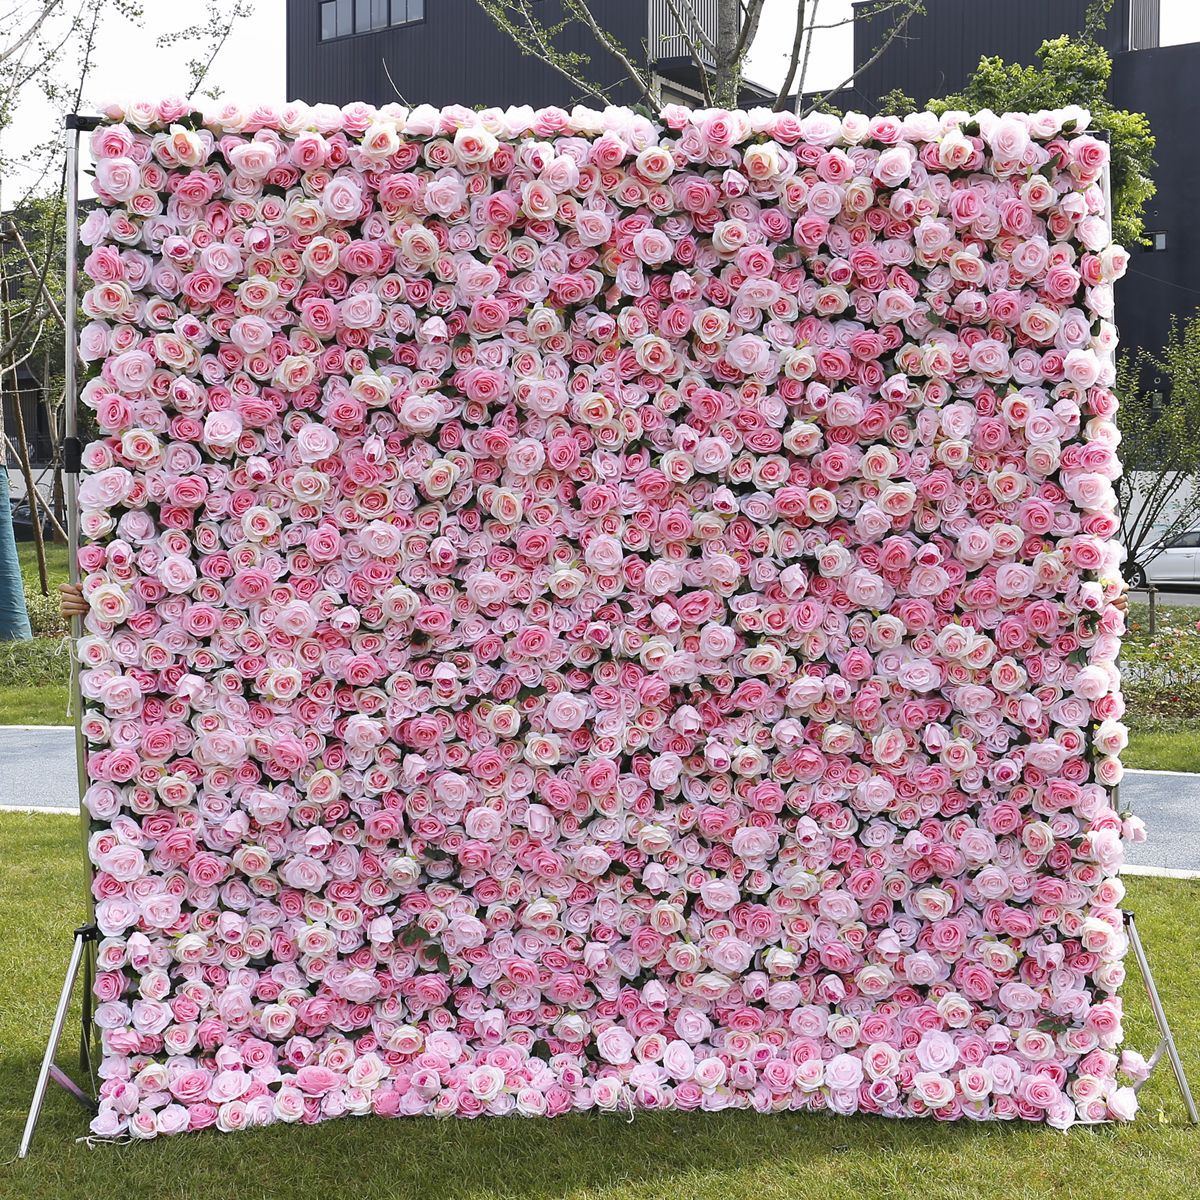 Pabrik simulasi penjualan langsung kain dinding bunga sutra pink dekorasi pintu toko bunga